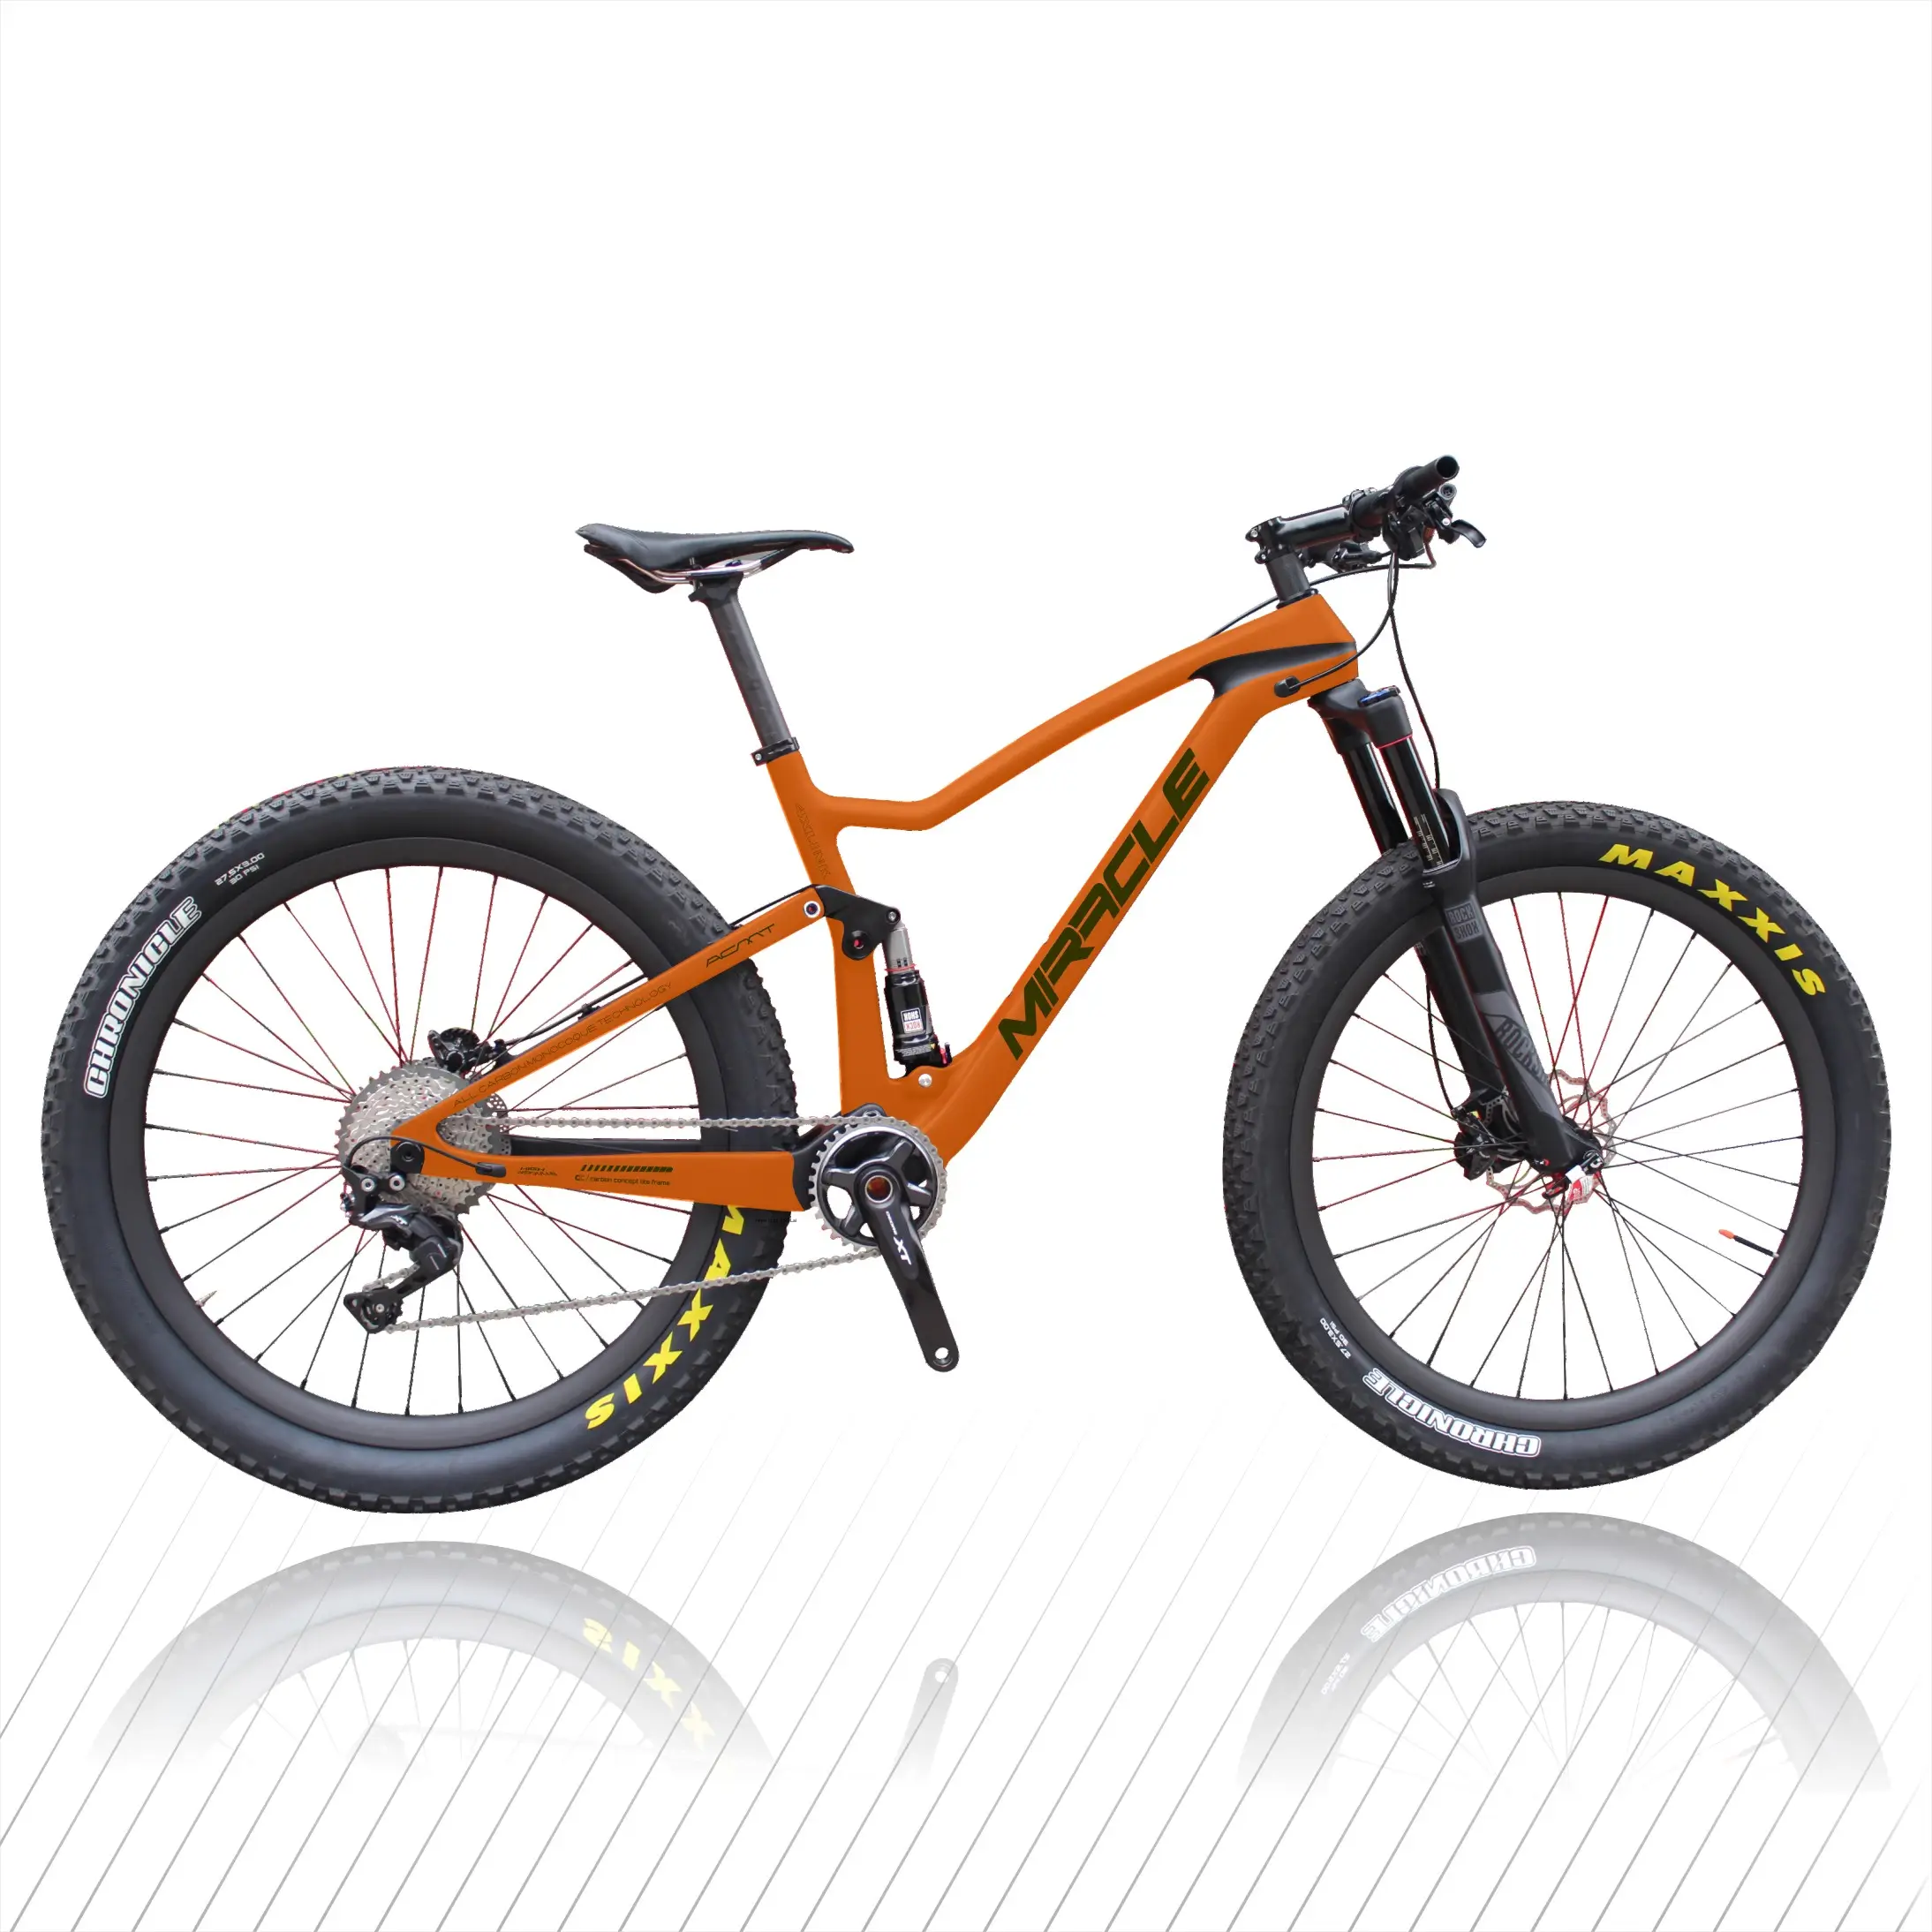 29er MTB karbon bisiklet, 12*148mm arka thru aks karbon dağ bisikleti çerçeve, sıcak karbon komple dağ bisikleti